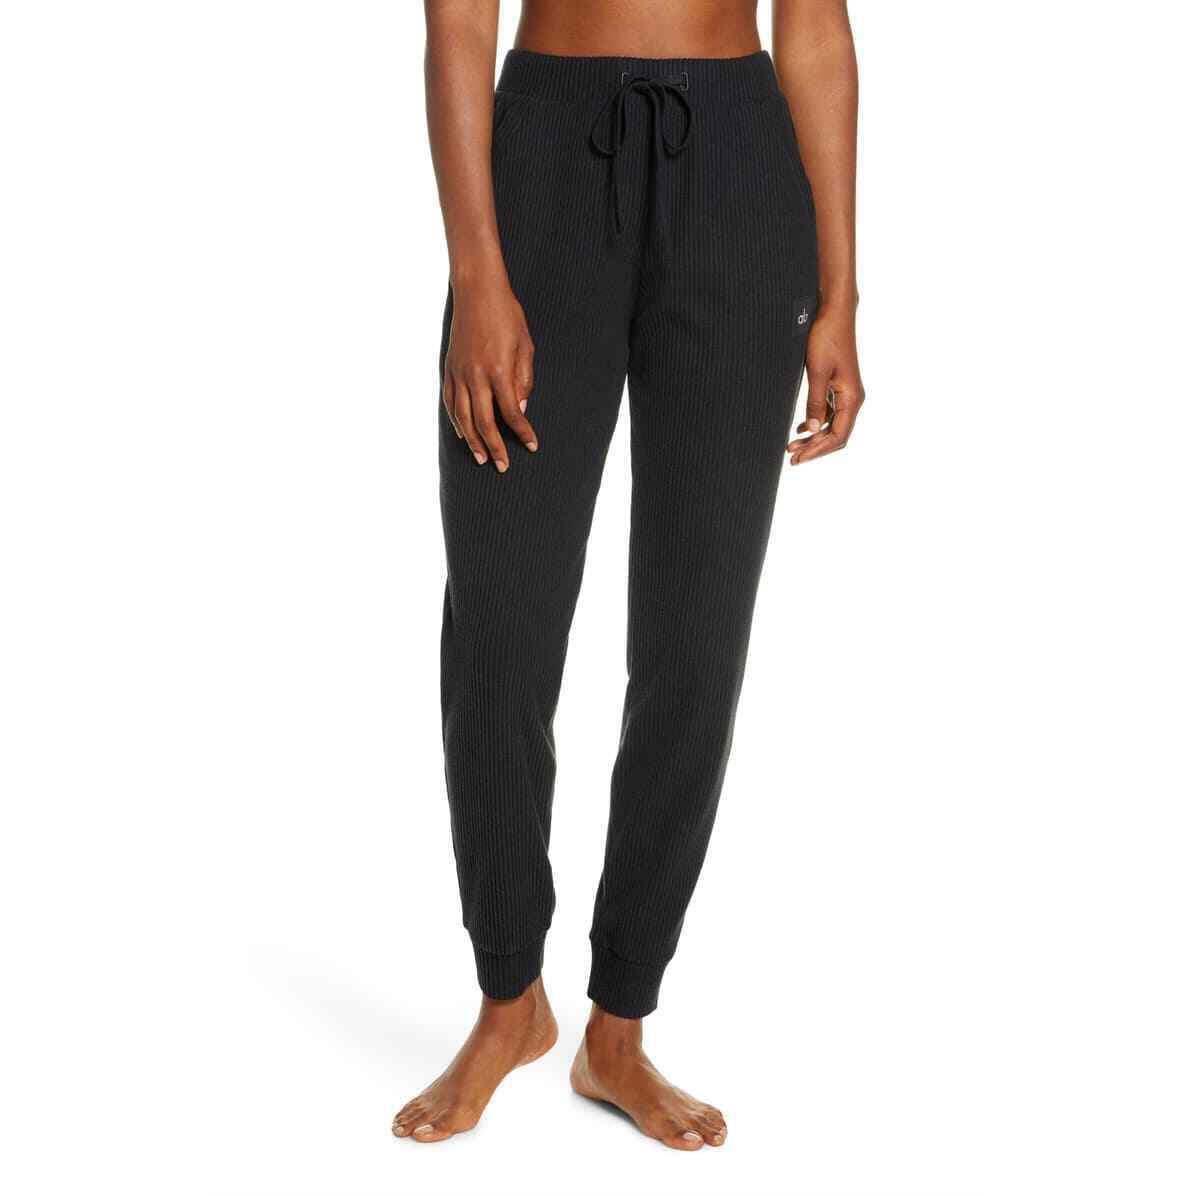 Alo Yoga Muse High Waist Sweatpants Soft Lounge Pants